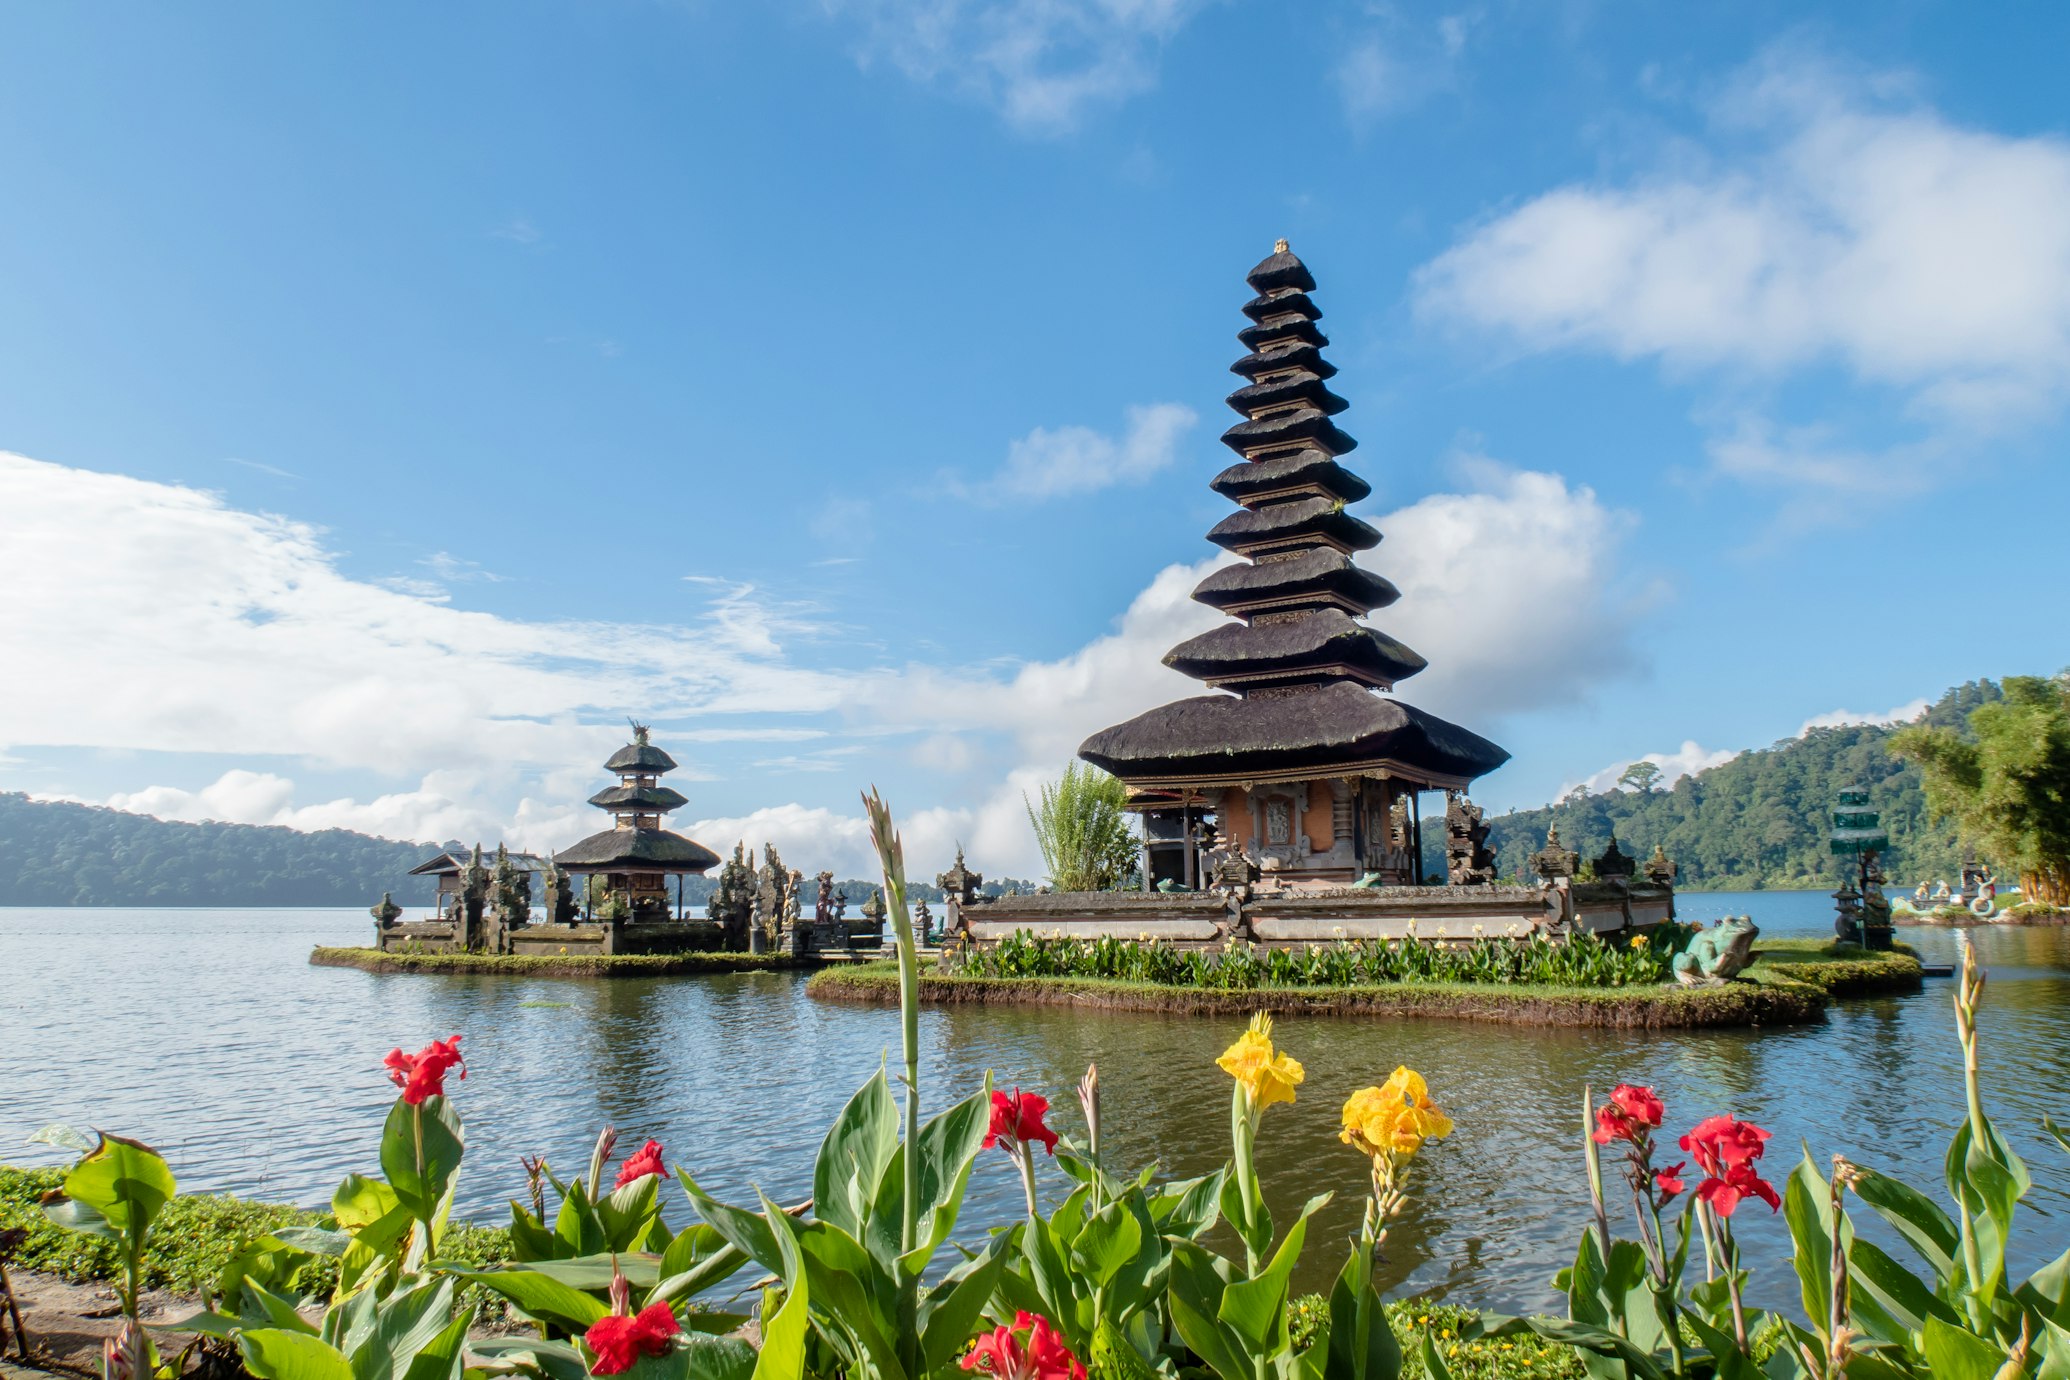 Image of Ulun Danu Beratan Temple, Bali, Indonesia